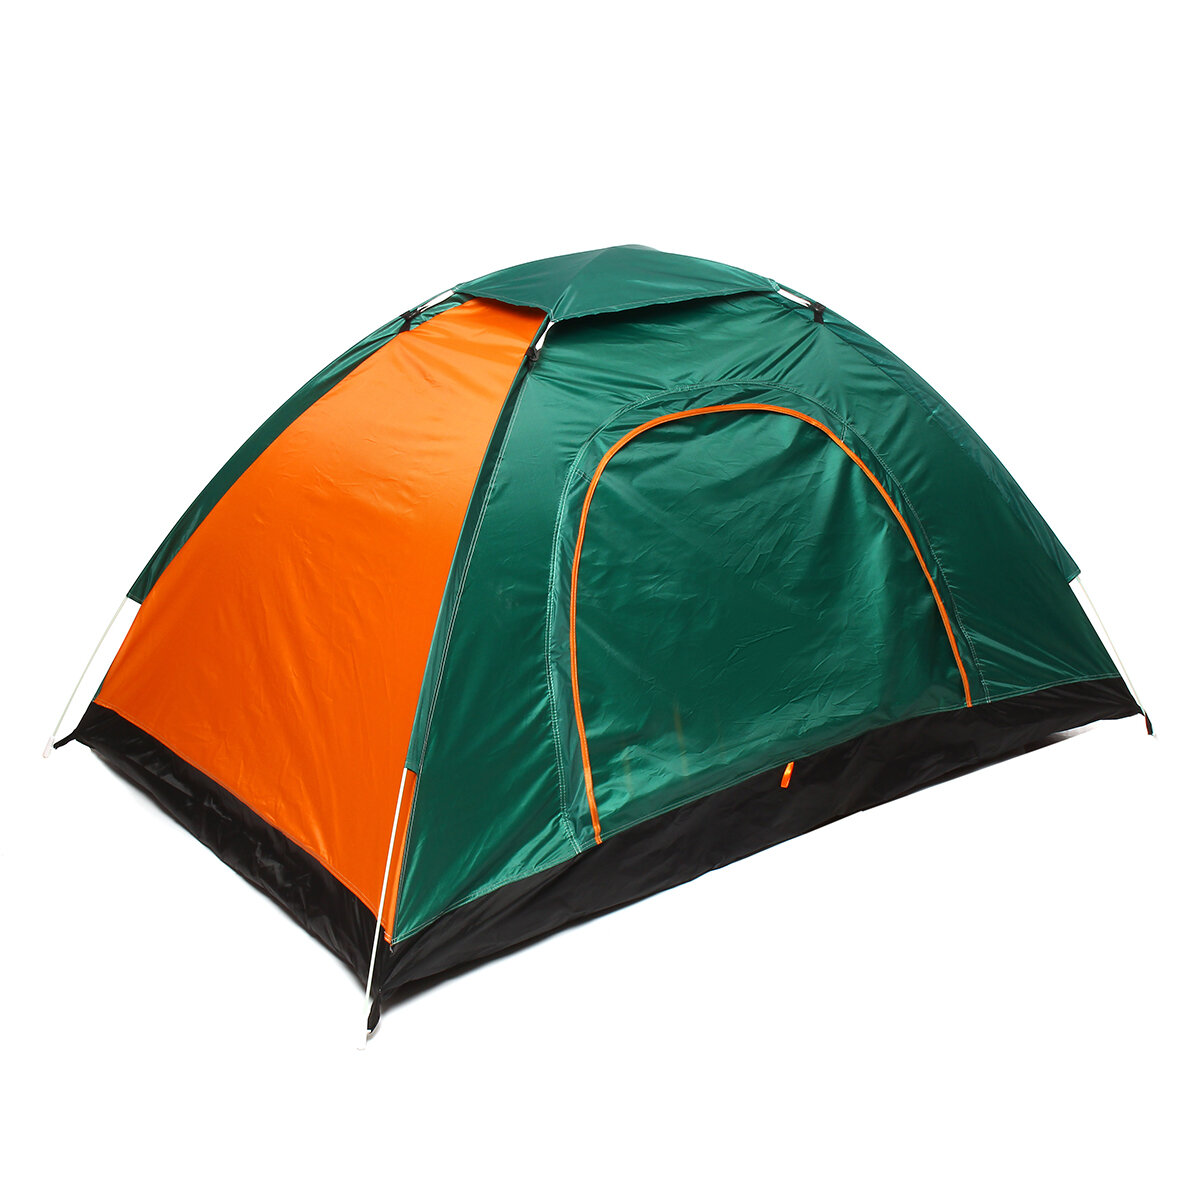 IPRee®2-3人自動キャンプテント防水防風雨よけサンシェード